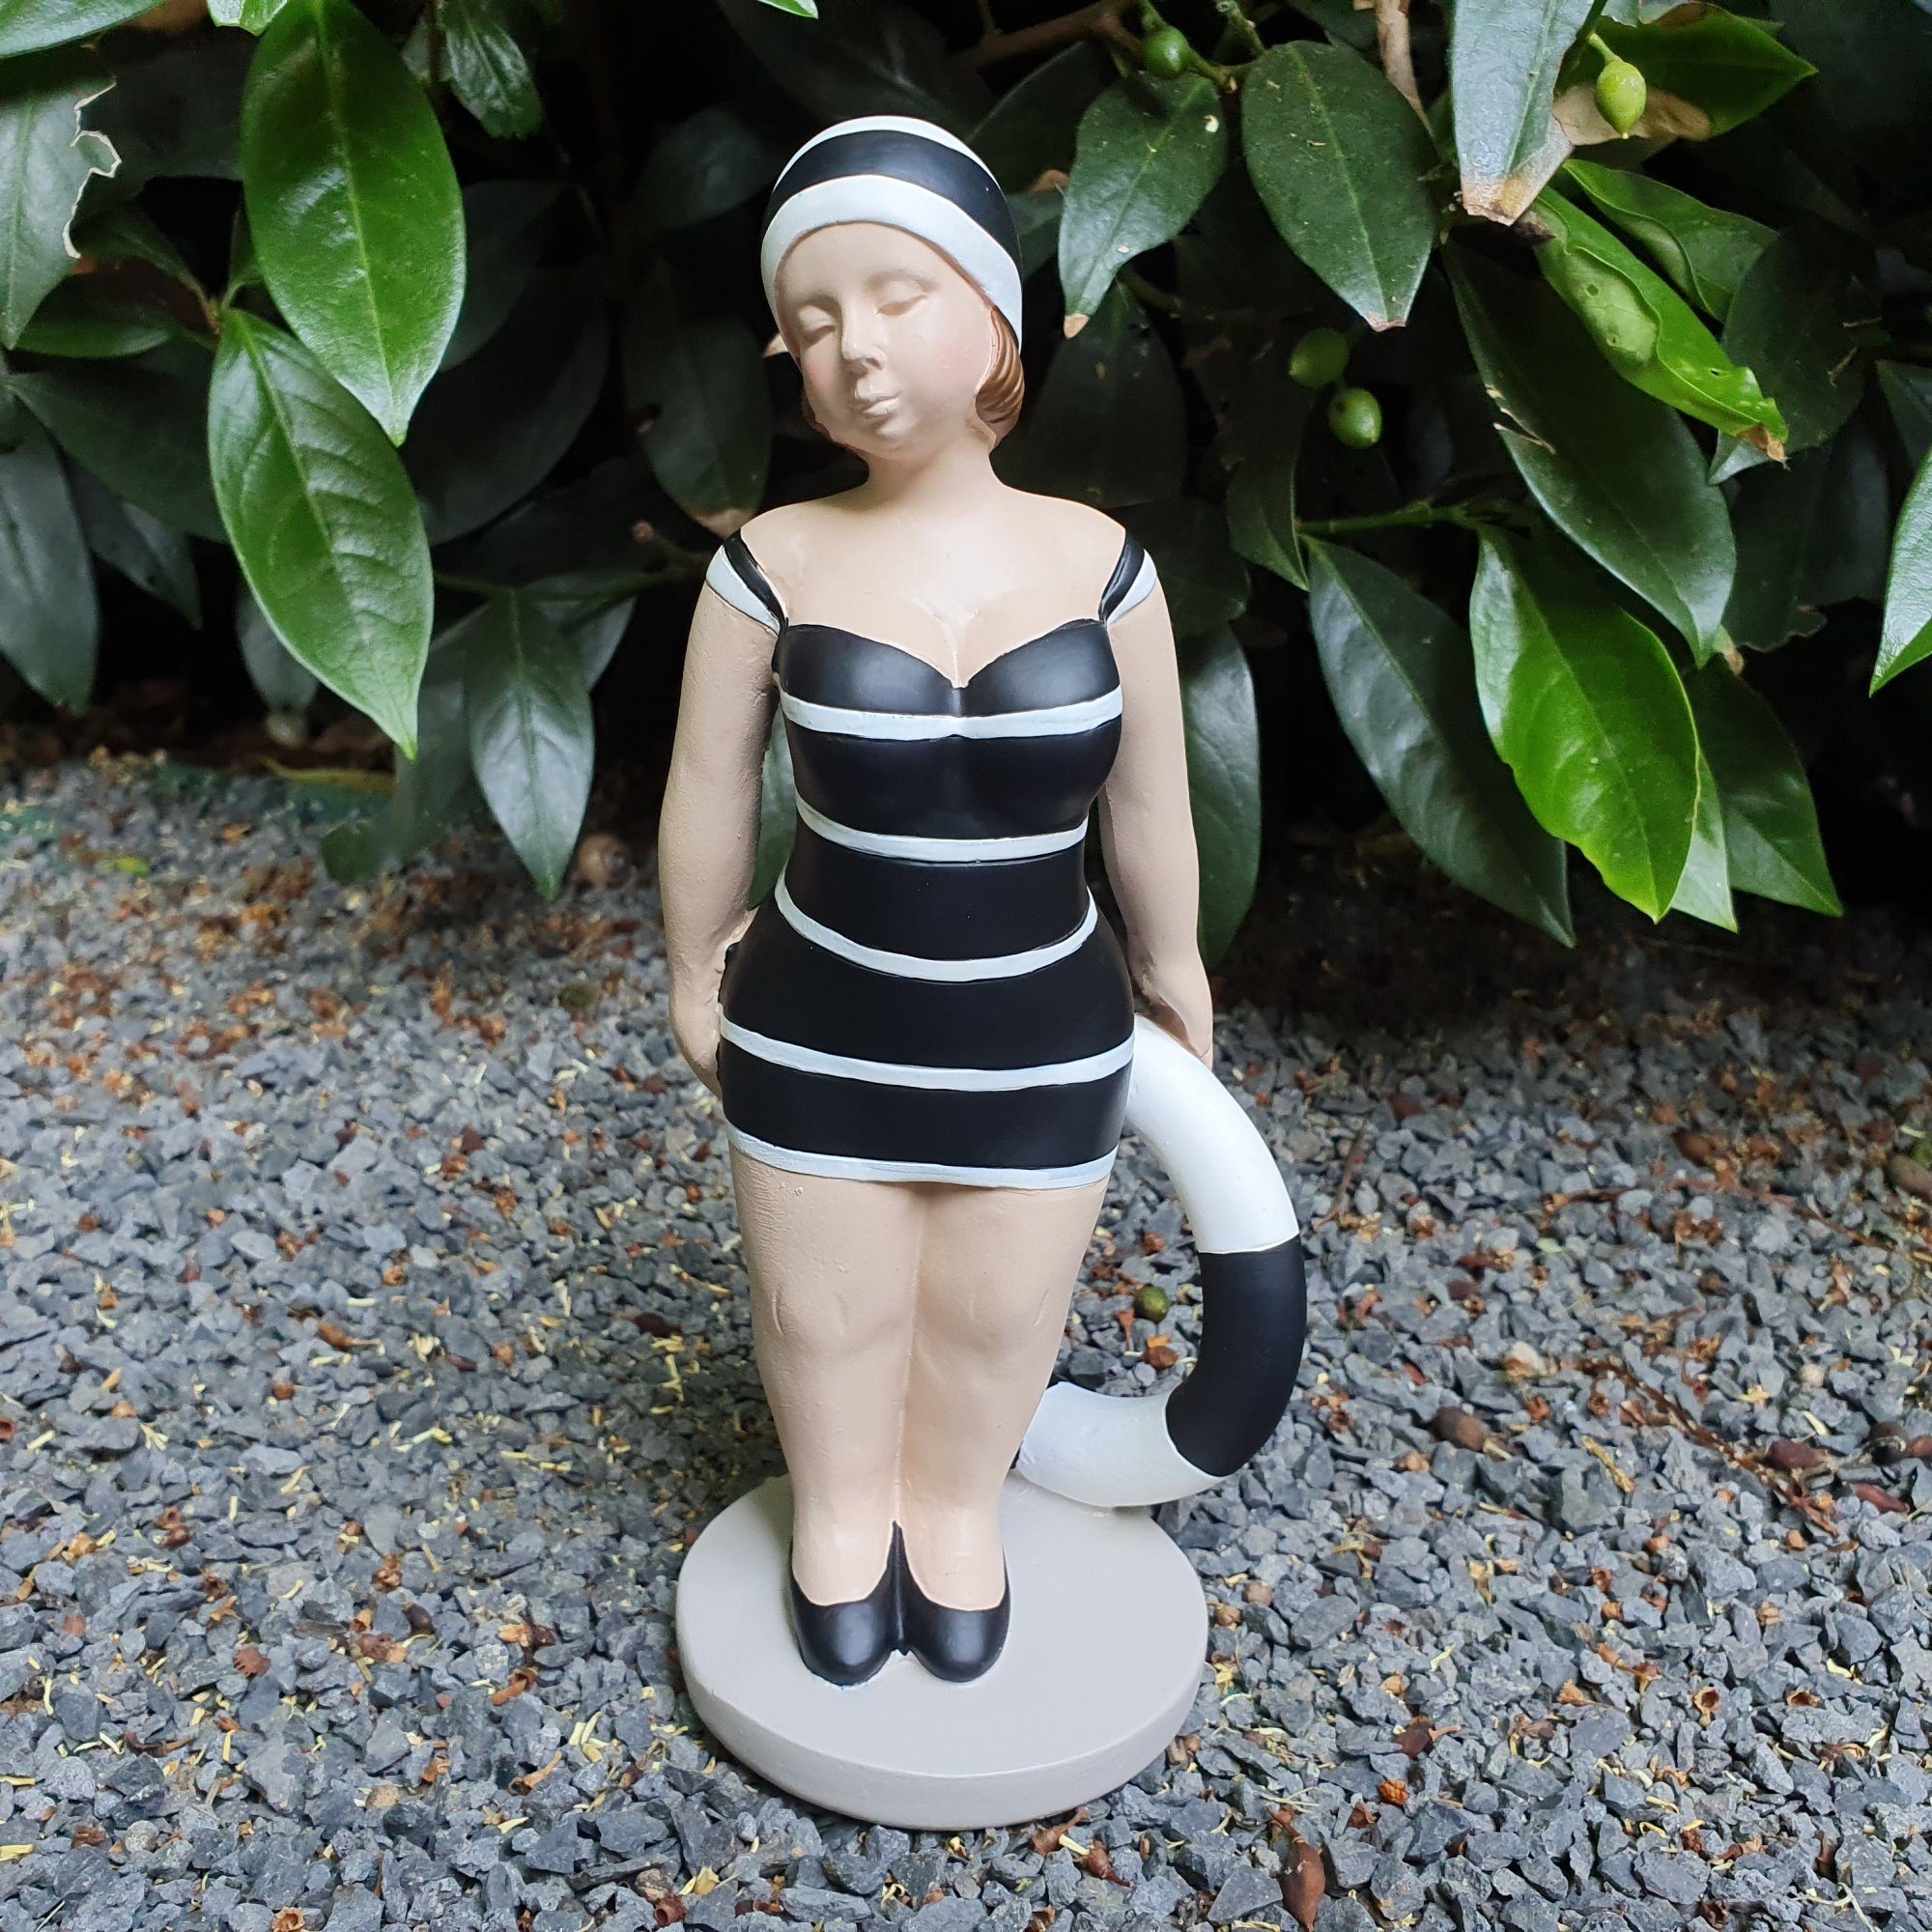 Aspinaworld Gartenfigur Stehende Badenixe Figur mit Rettungsring 21 cm schwarz Gartendeko